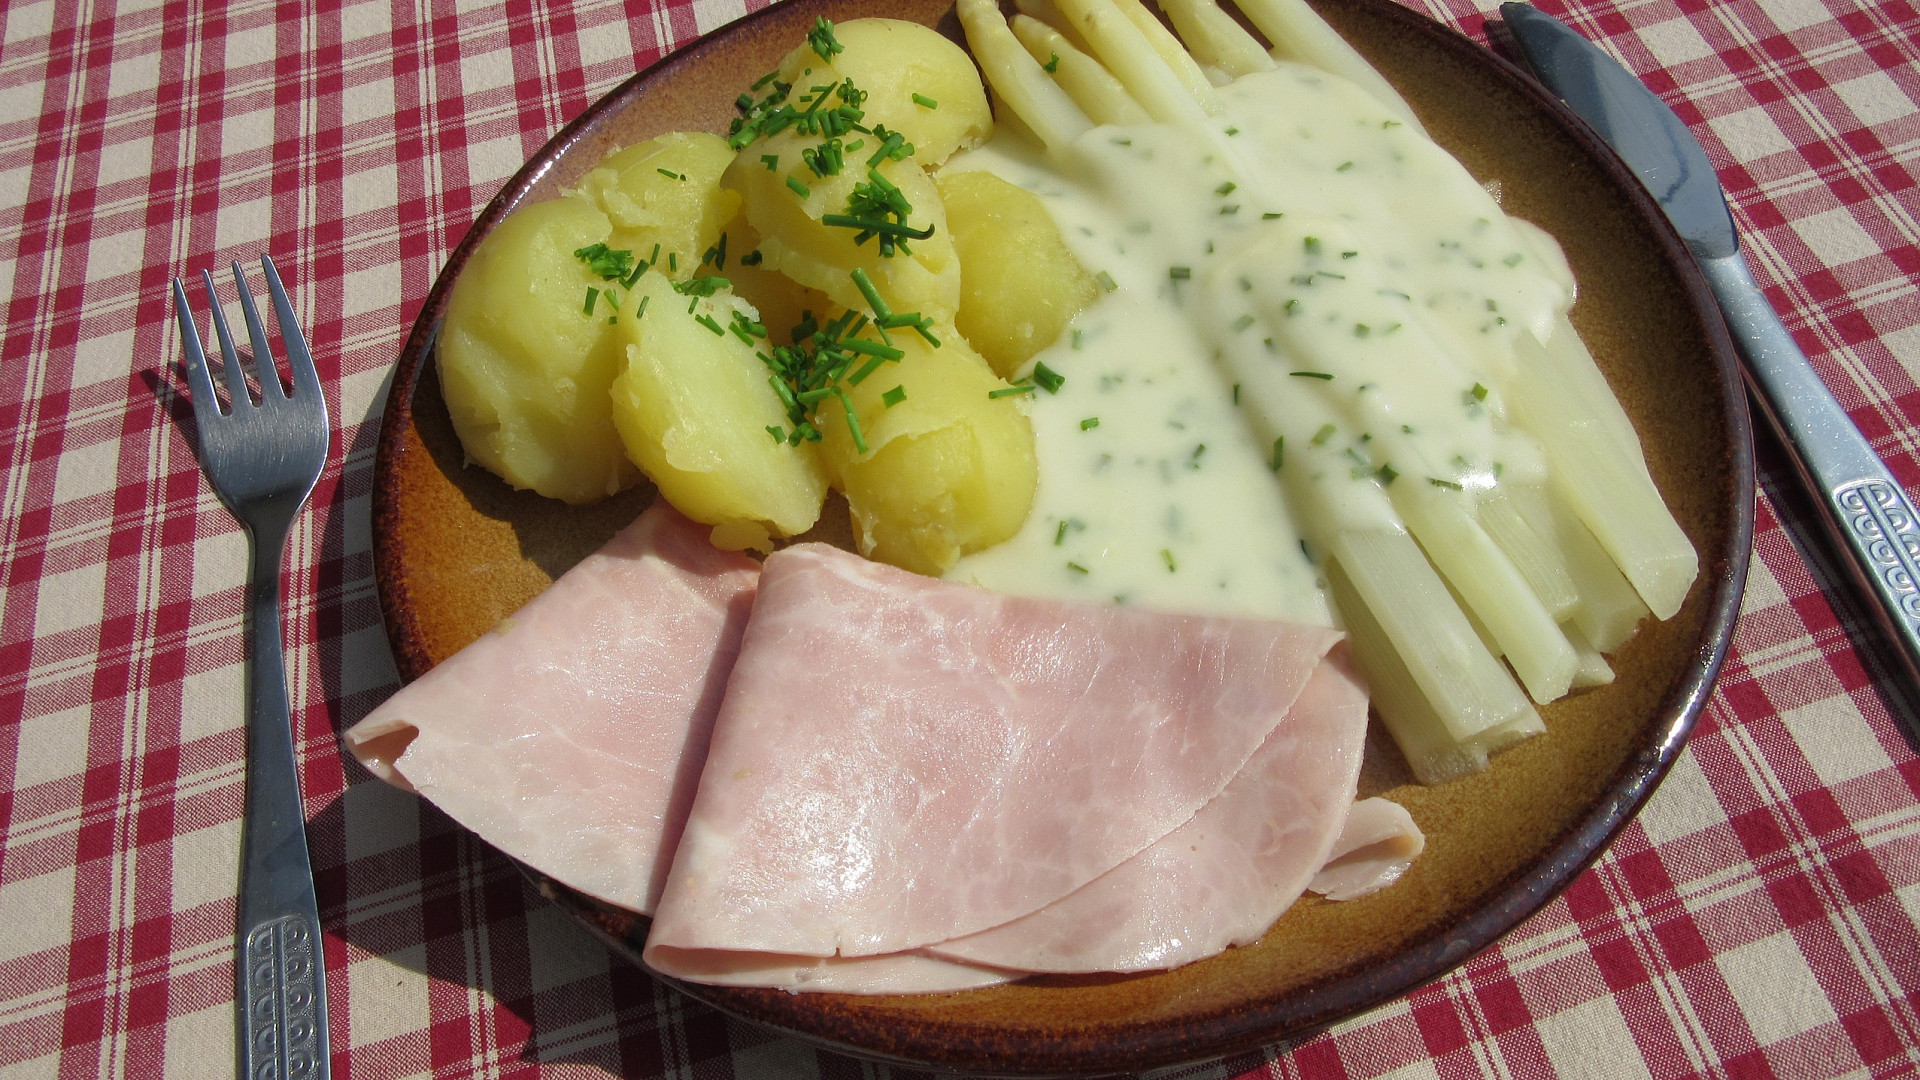 Chřest se smetanovo-sýrovou omáčkou, šunkou a bramborami